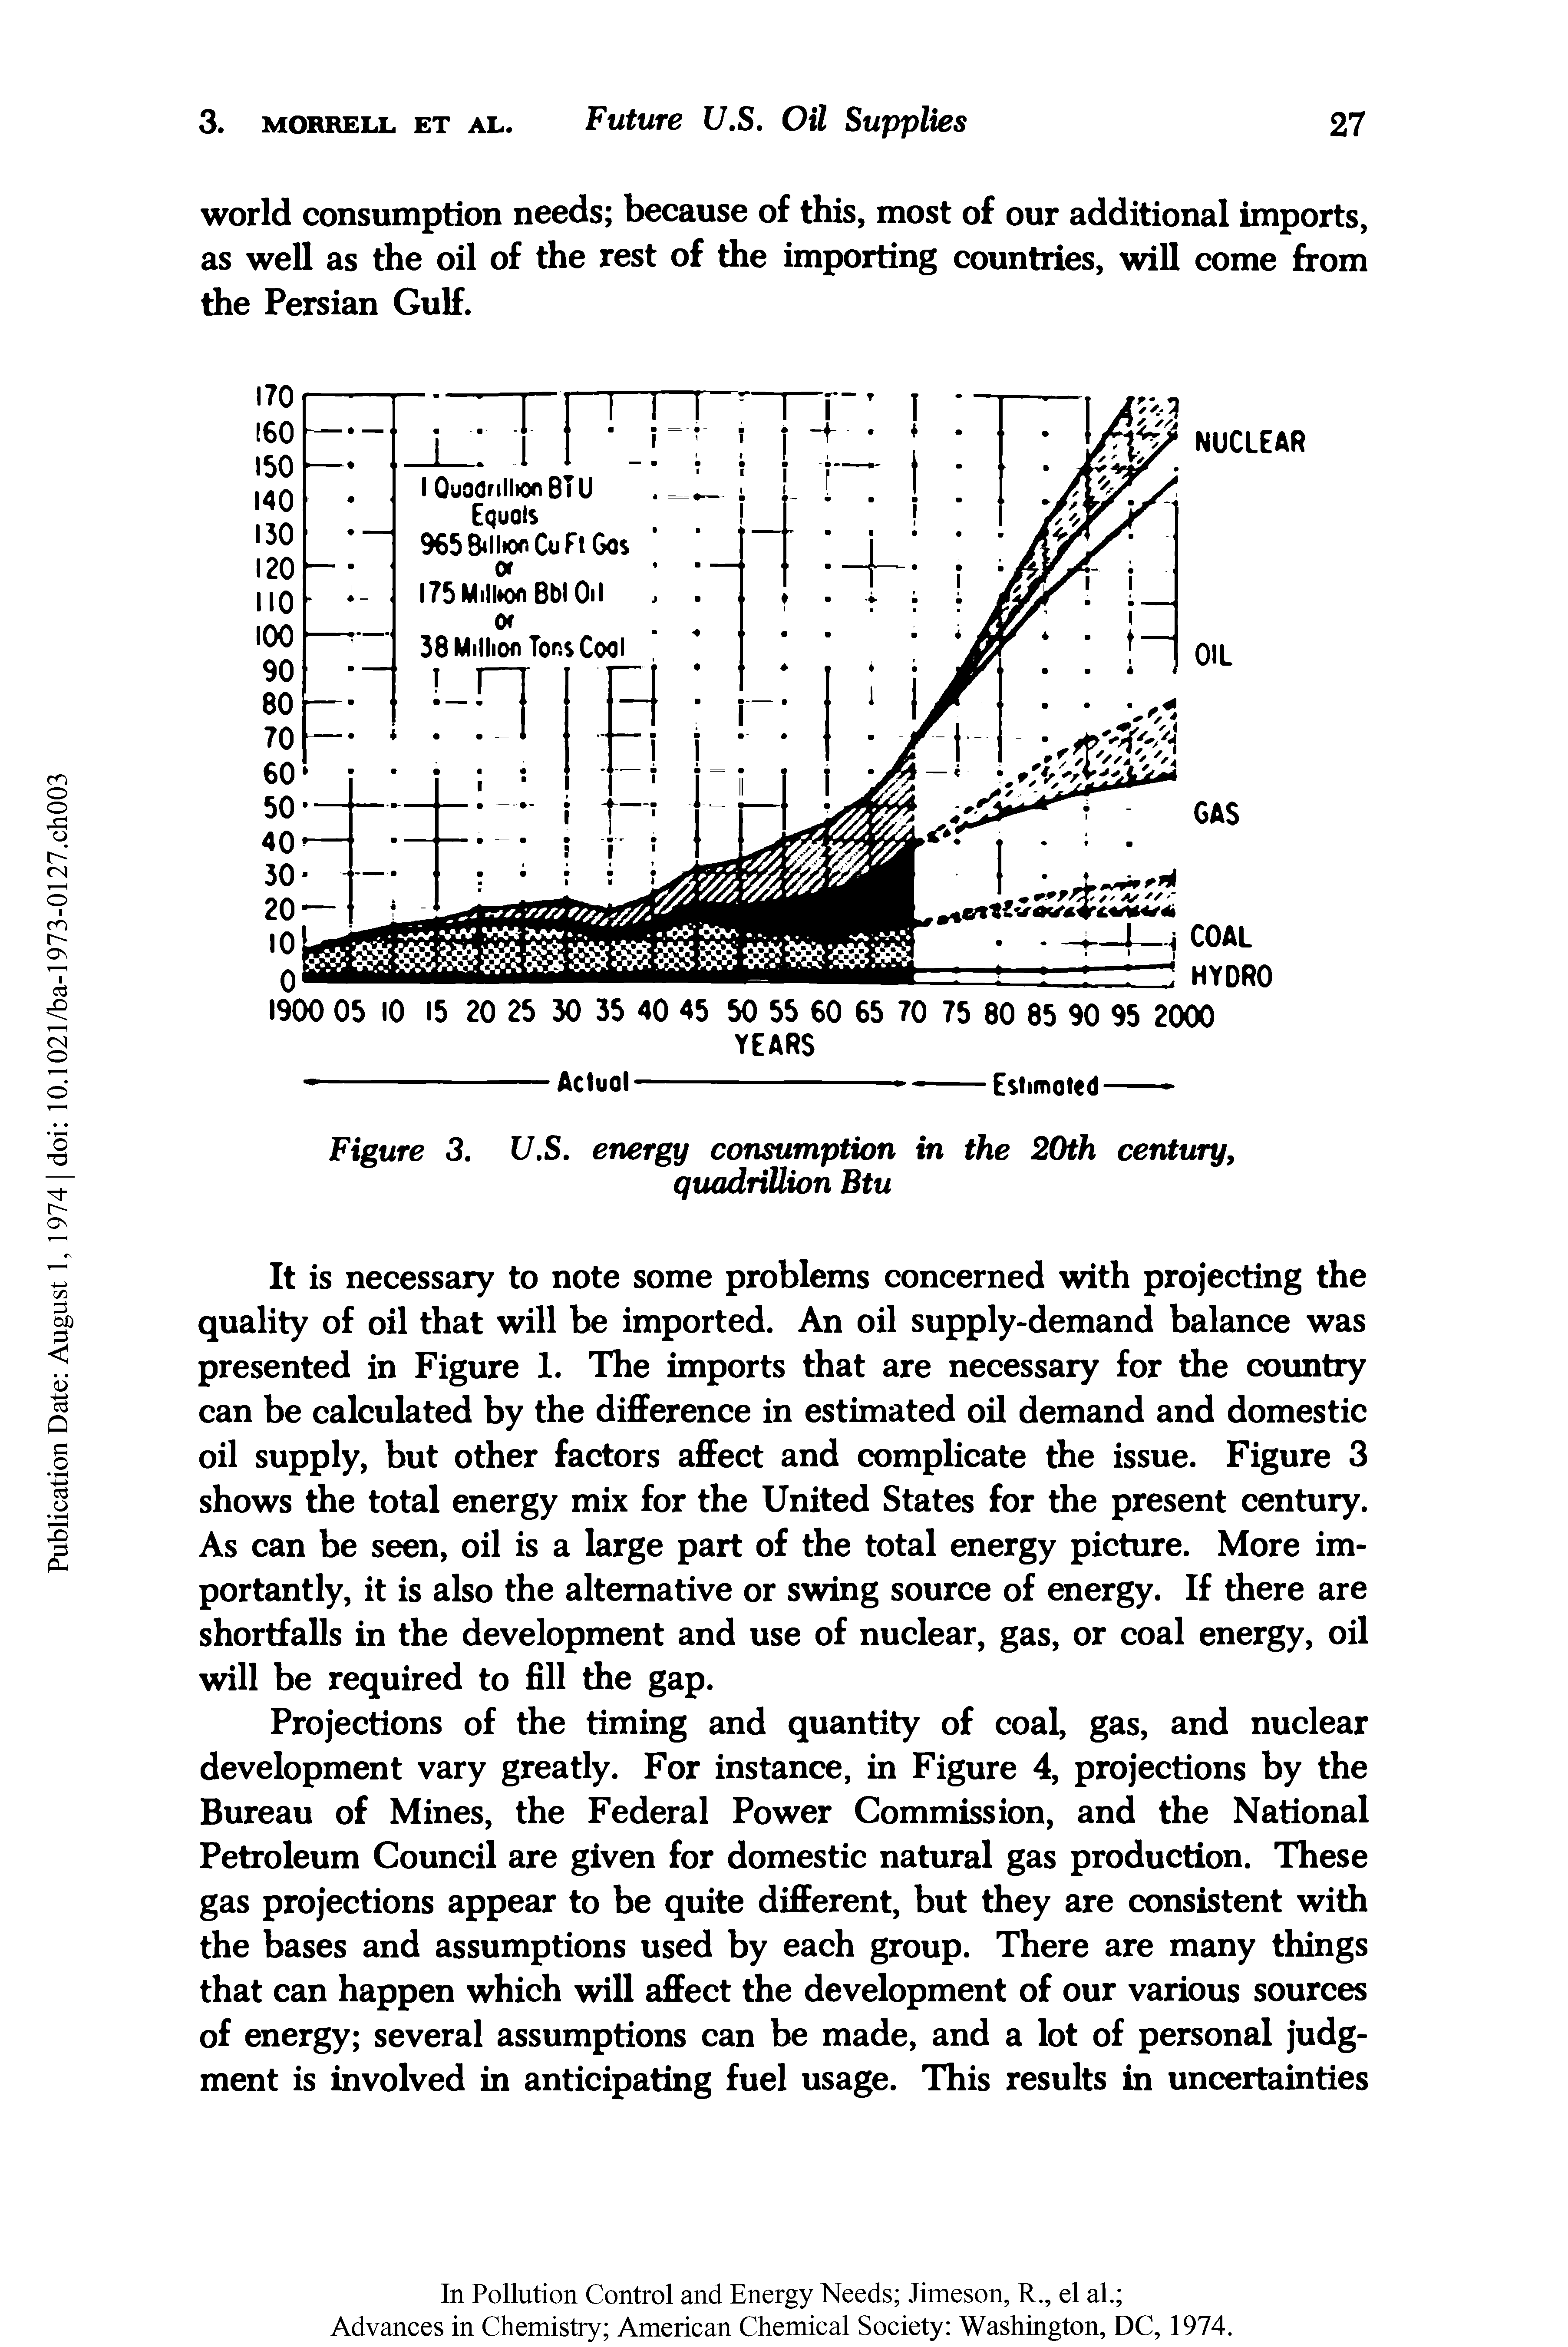 Figure 3, U.S. energy consumption in the 20th century, quadrillion Btu...